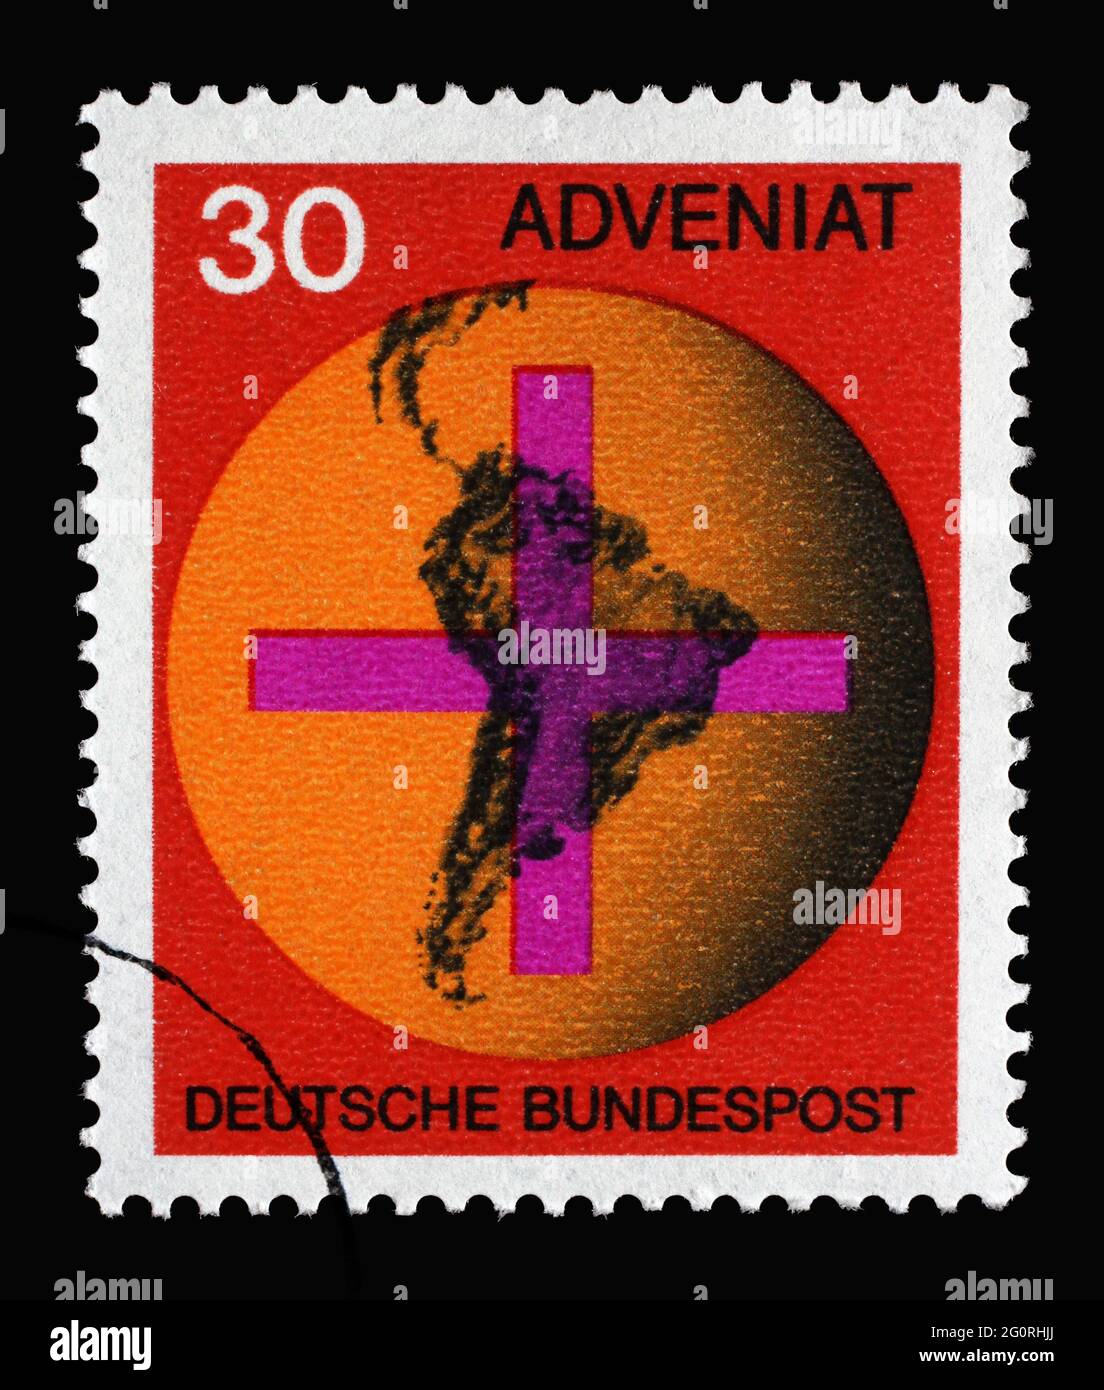 Stampato in Germania con croce davanti a un globo con mappa del Sud America, "Adveniat", movimento di aiuto dei cattolici tedeschi per l'America Latina Foto Stock